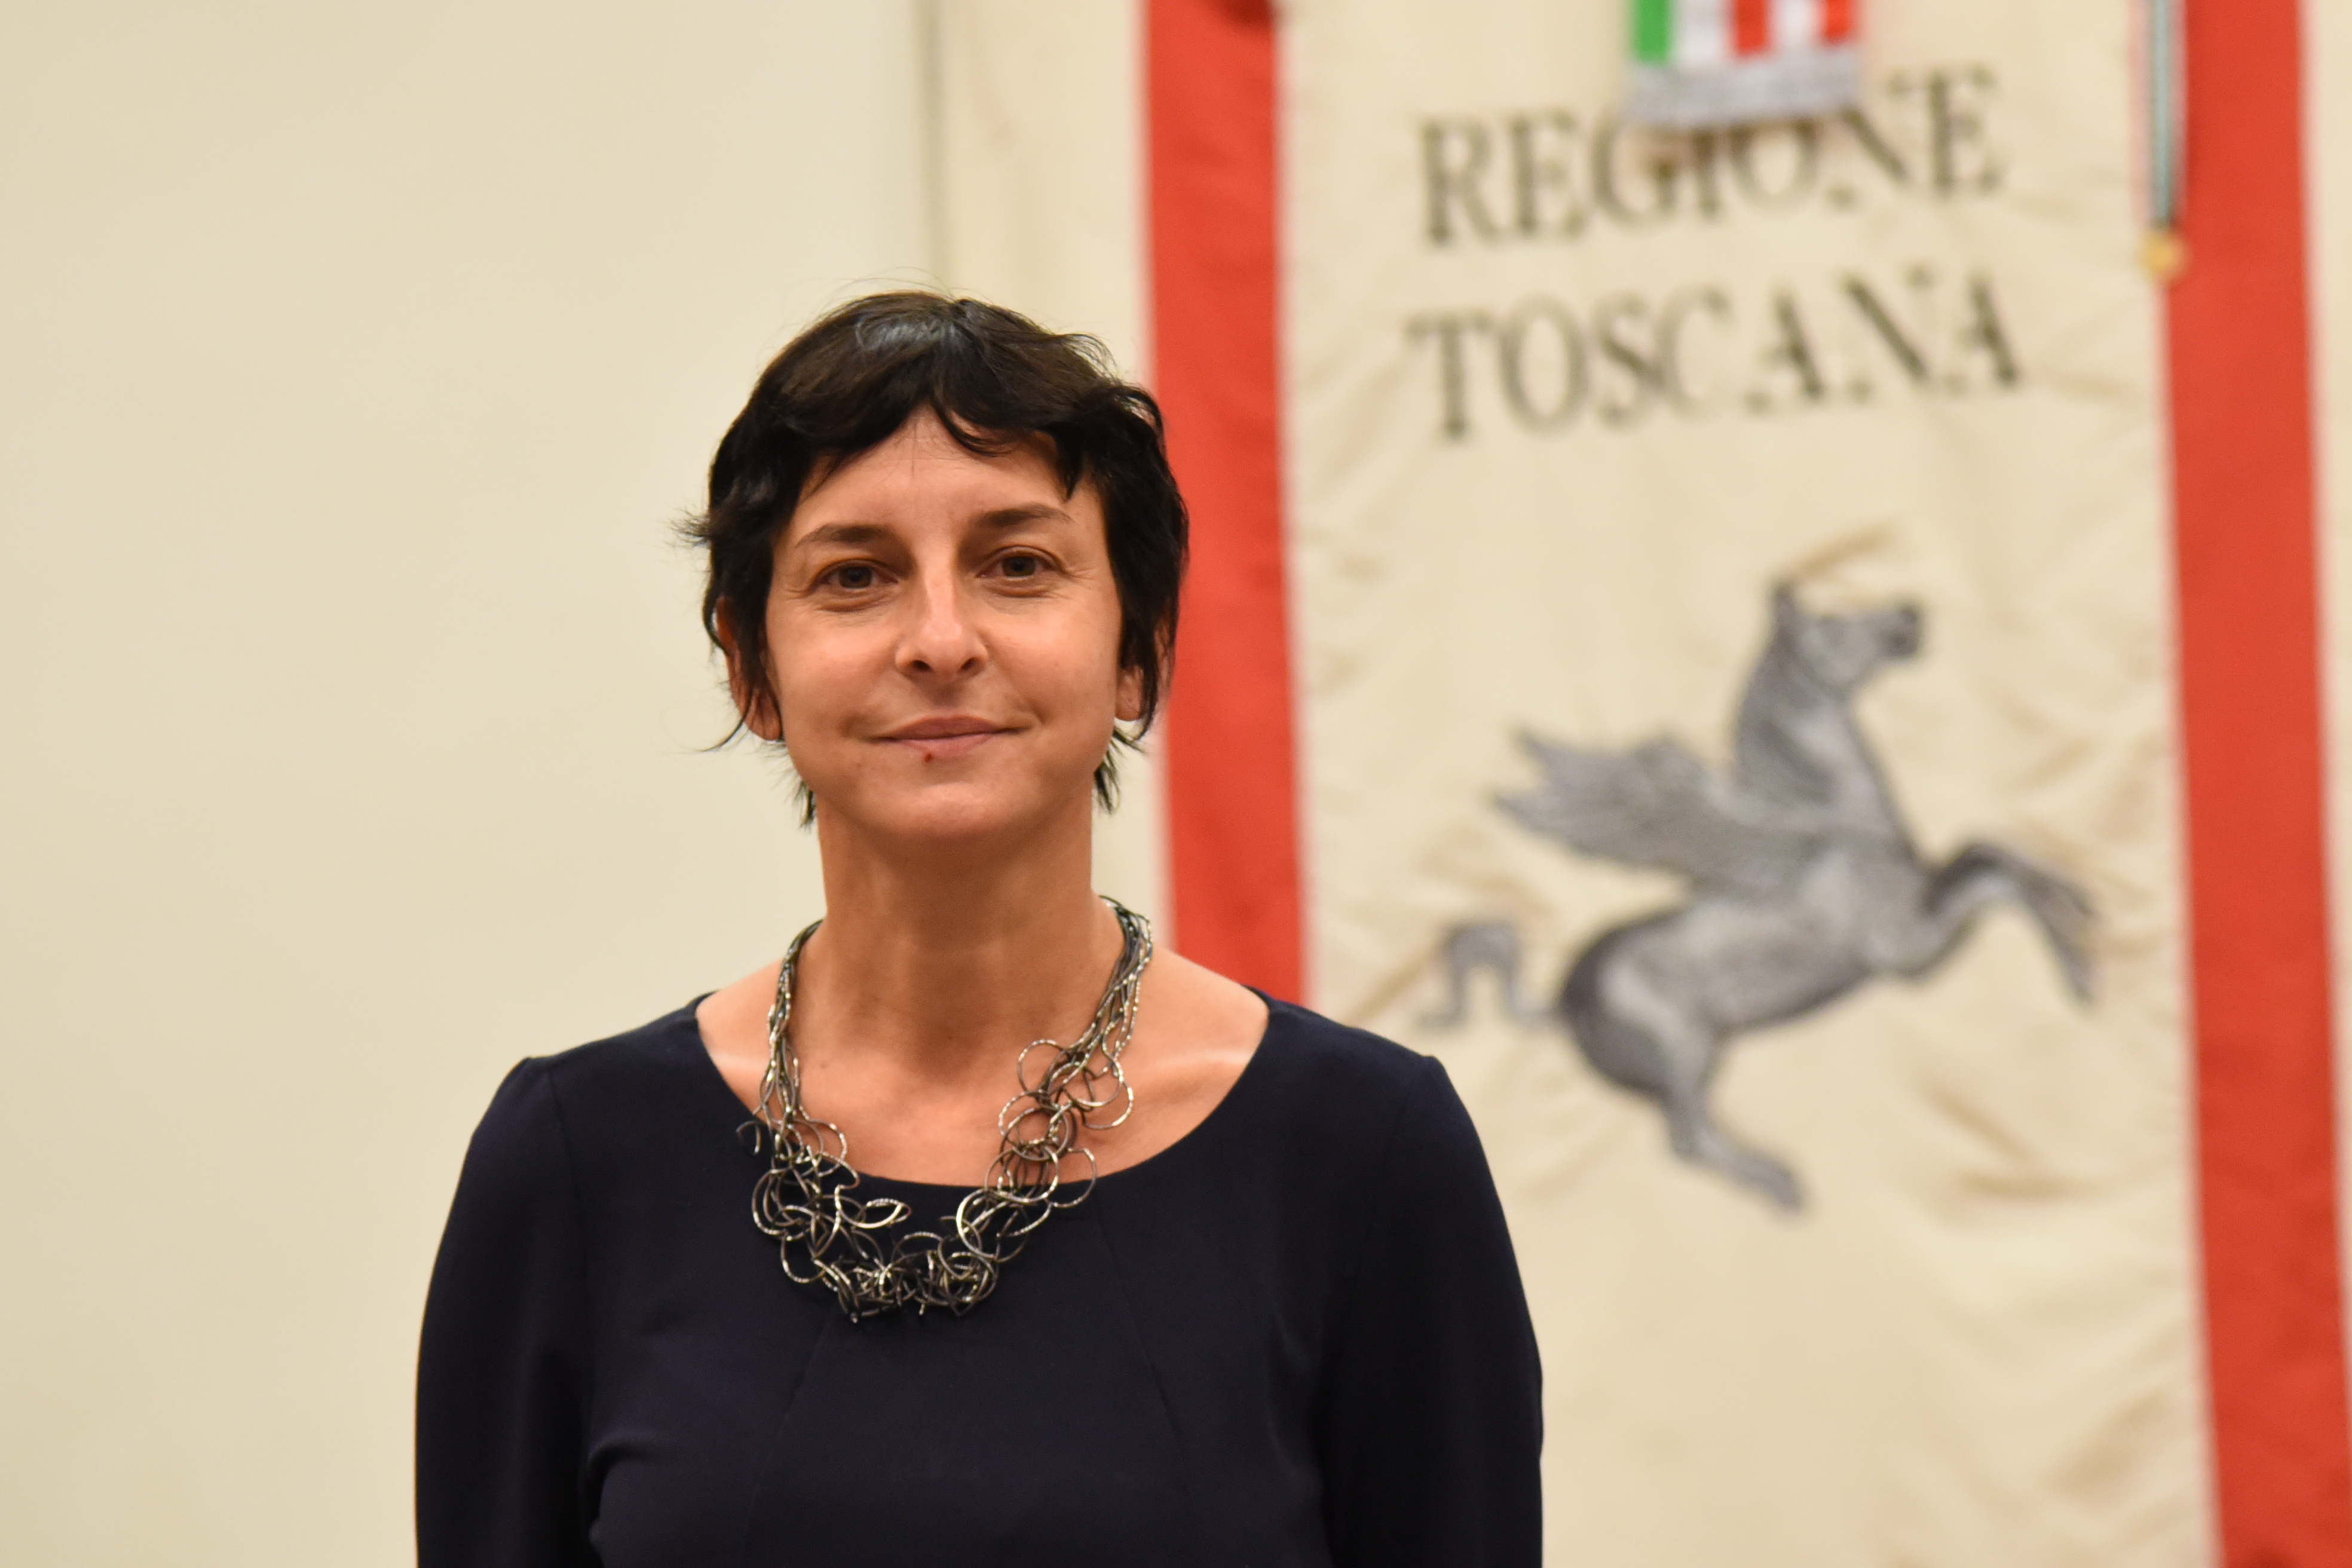  Diritti dei minori, martedì 5 ottobre Spinelli visita strutture e servizi a Firenze e Prato